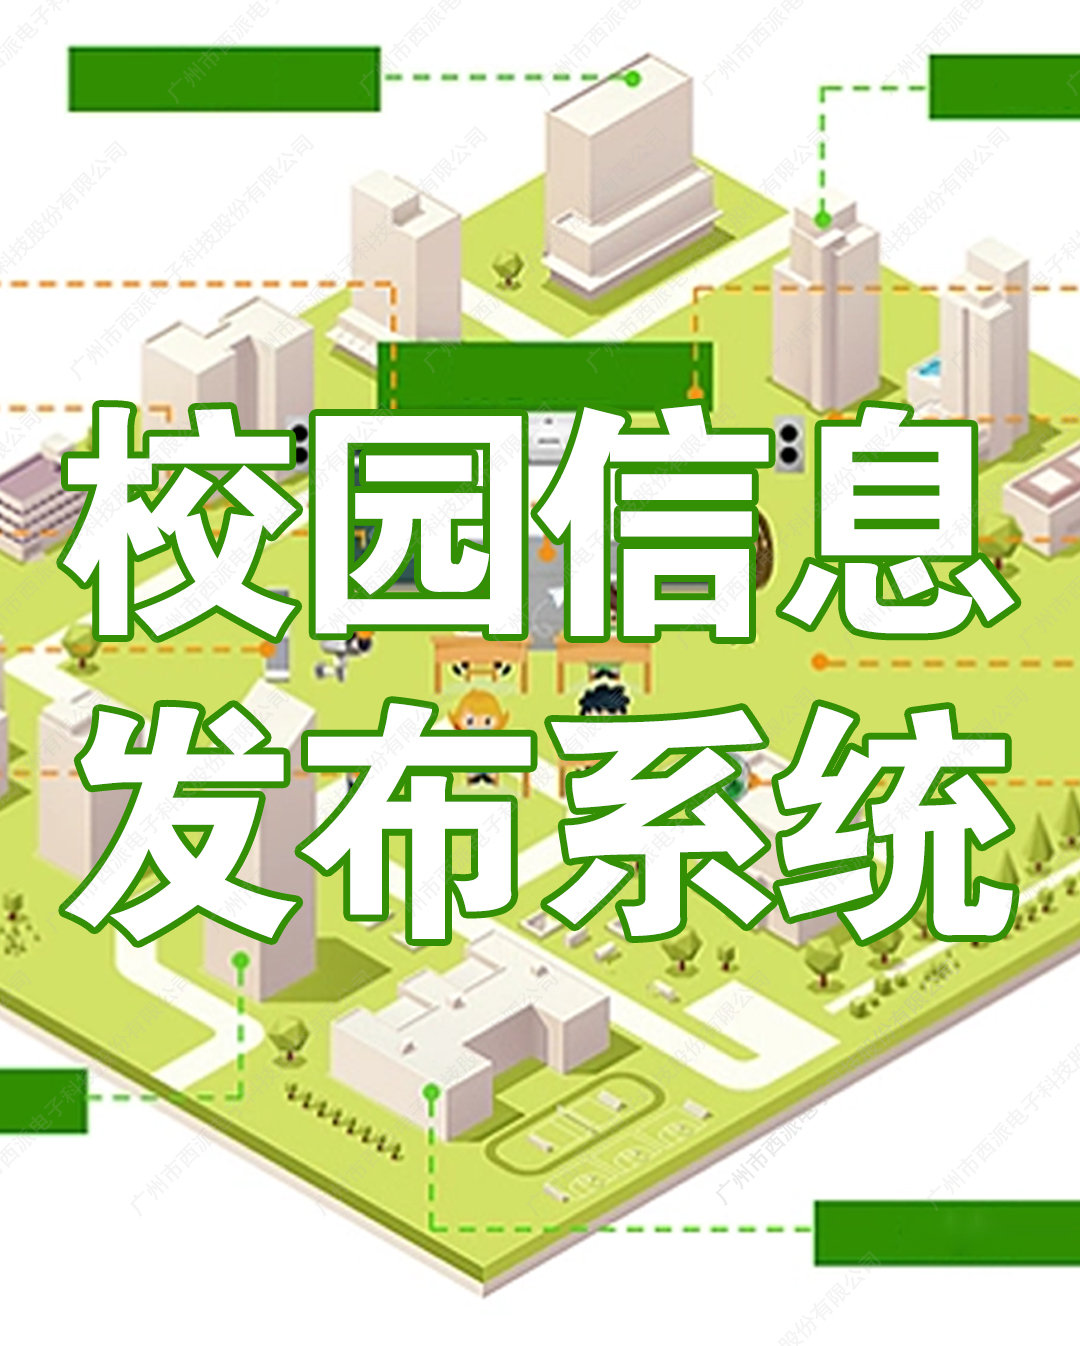 惠州校園信息發布系統